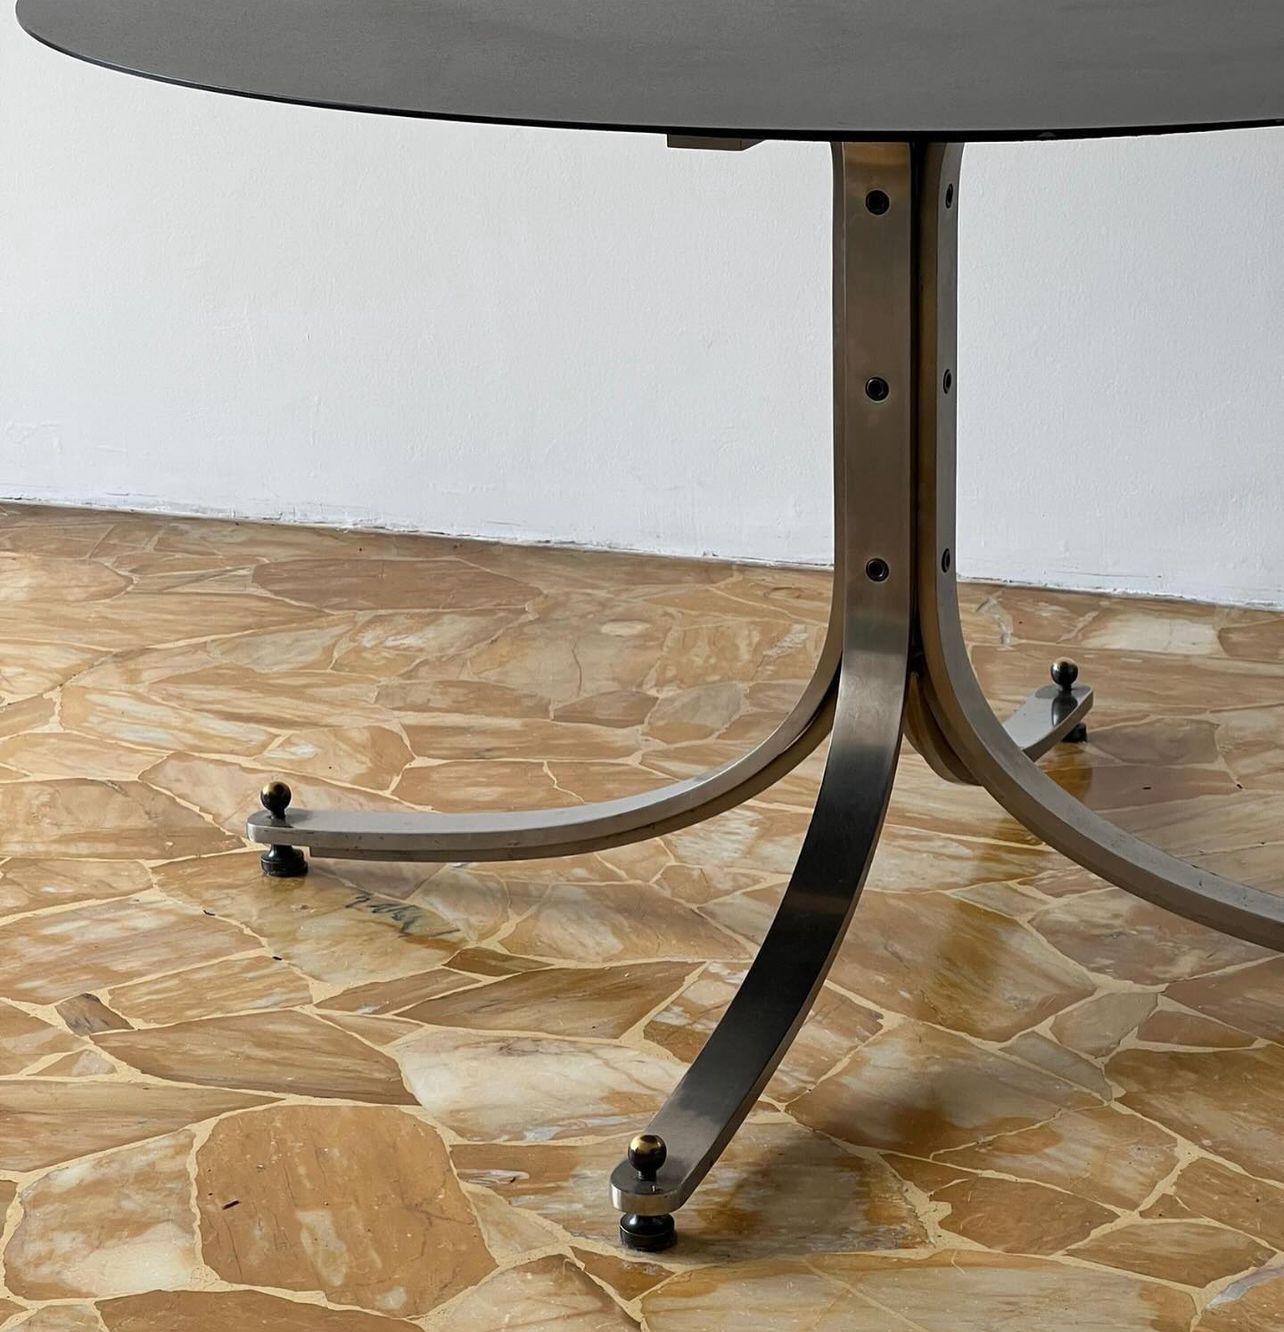 Table de salle à manger sculpturale - Italian Collectible Design - Table en acier inoxydable Sergio Mazza

Magnifique et intemporelle table de salle à manger conçue par Sergio Mazza pour la marque de mobilier italienne Arflex en 1962. Les quatre